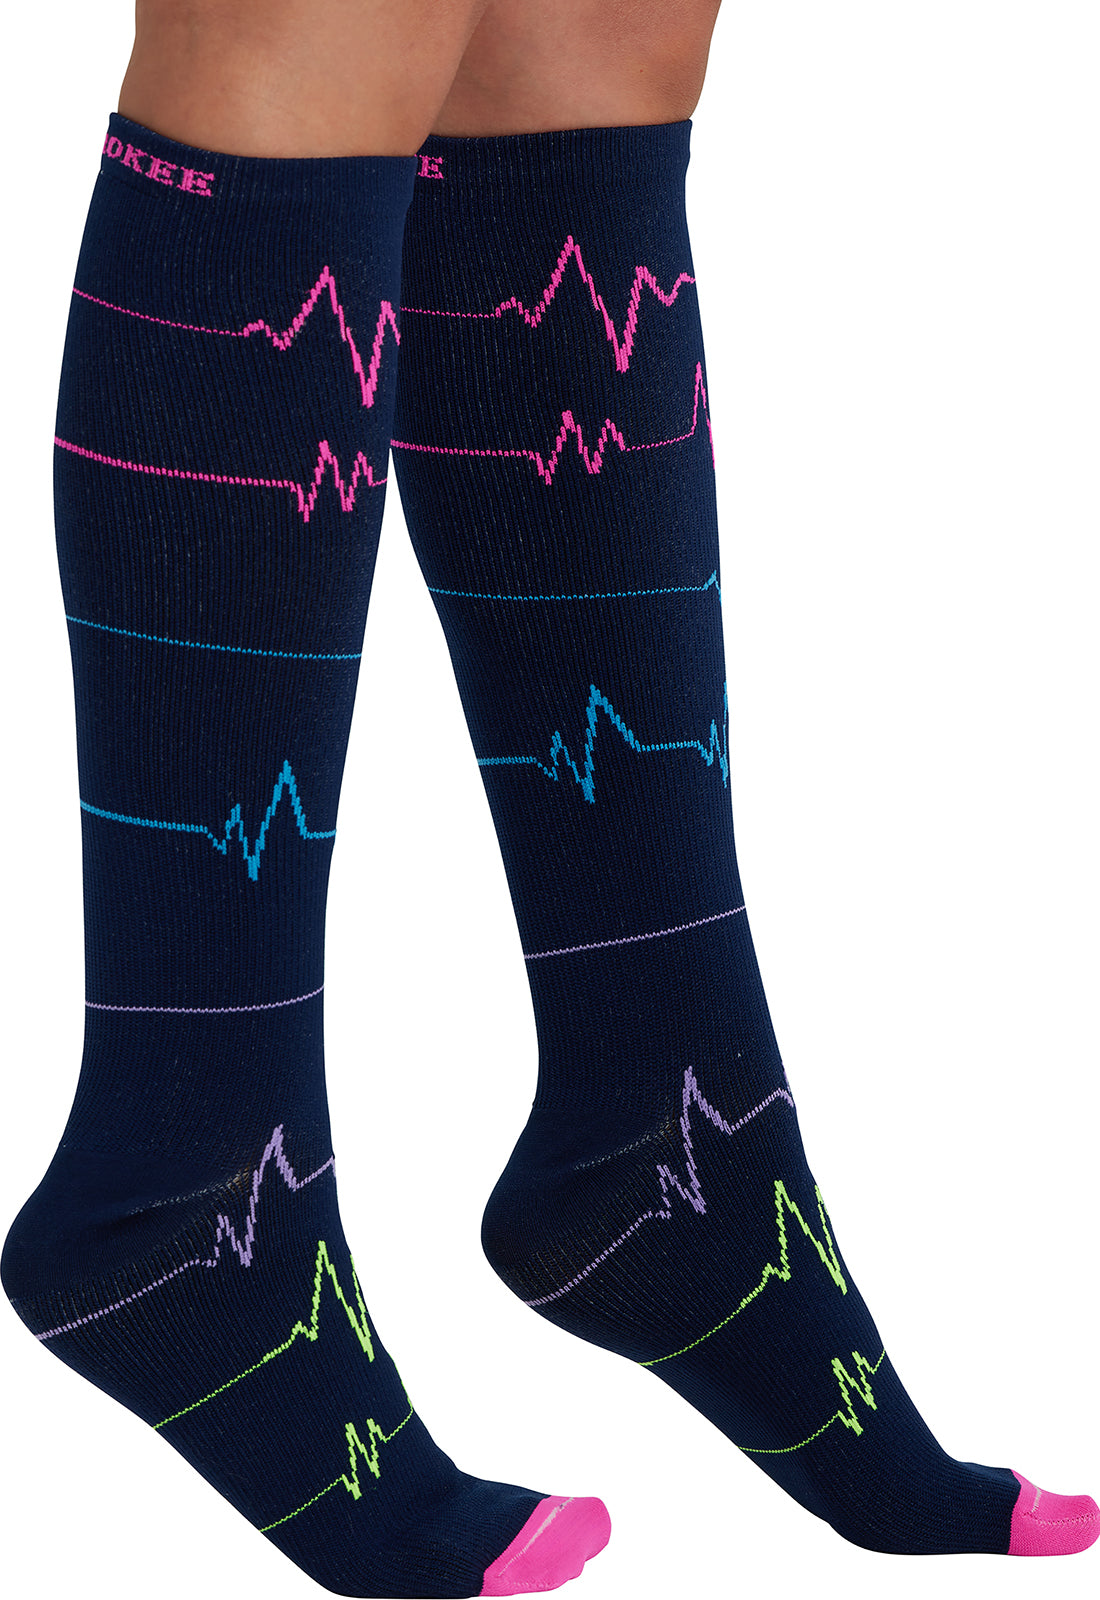 Regular Fit - Compression Socks 10-15mmHg Compression Socks Cherokee Legwear EKG ZigZag  